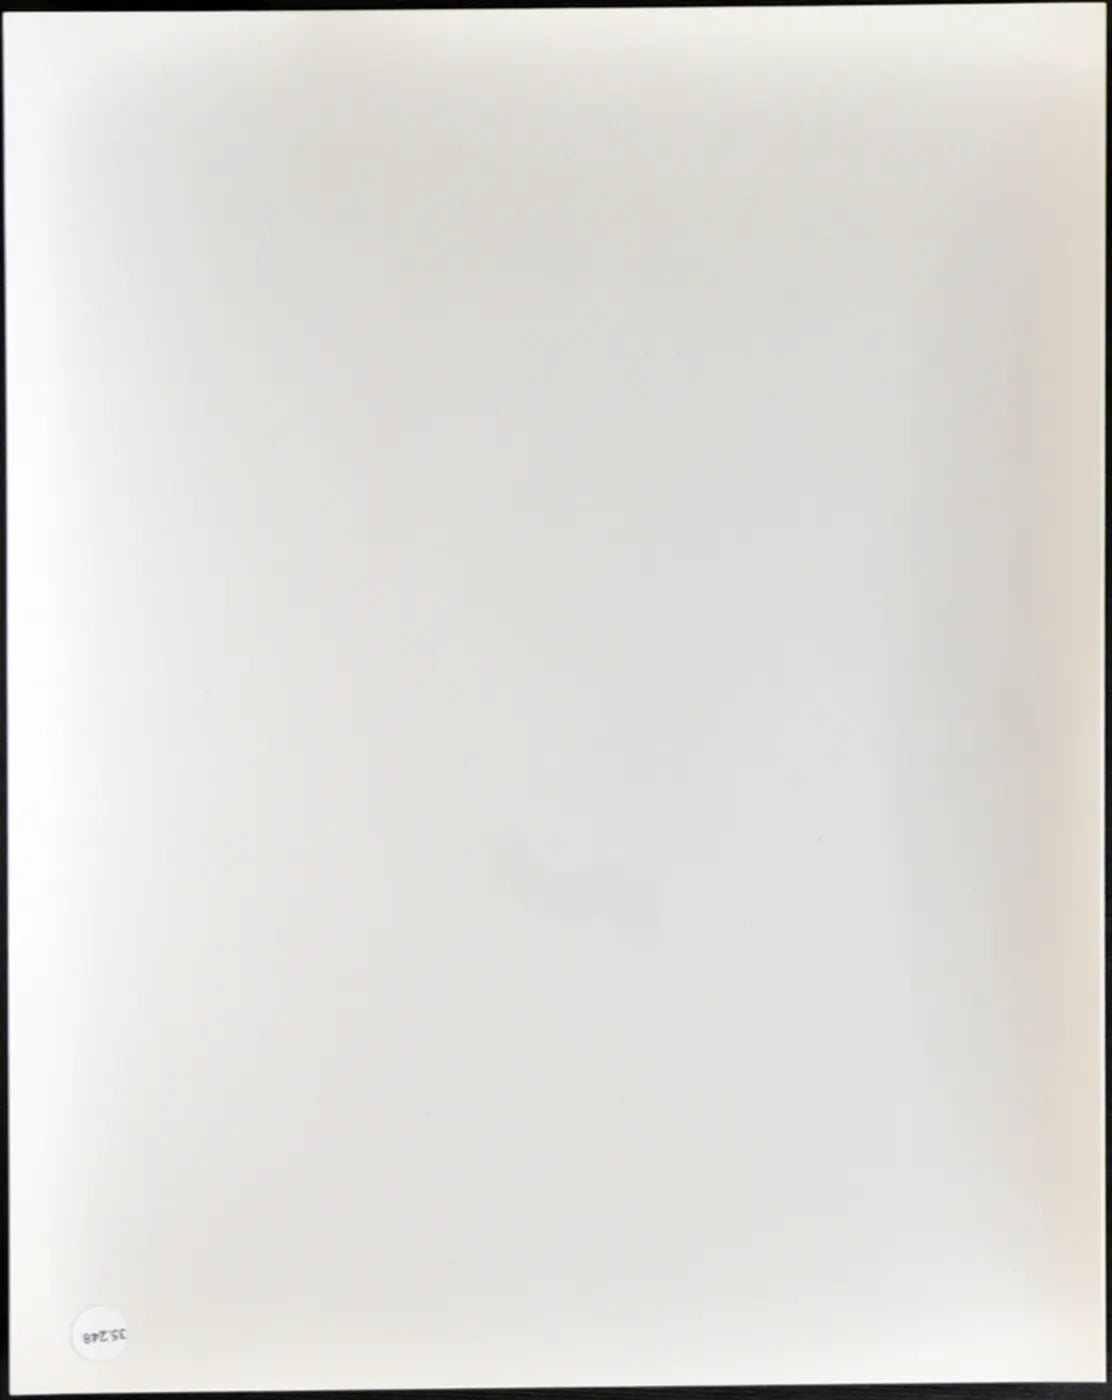 Michael Caine Film Fuga per la vittoria Ft 35248 - Stampa 20x25 cm - Farabola Stampa ai sali d'argento